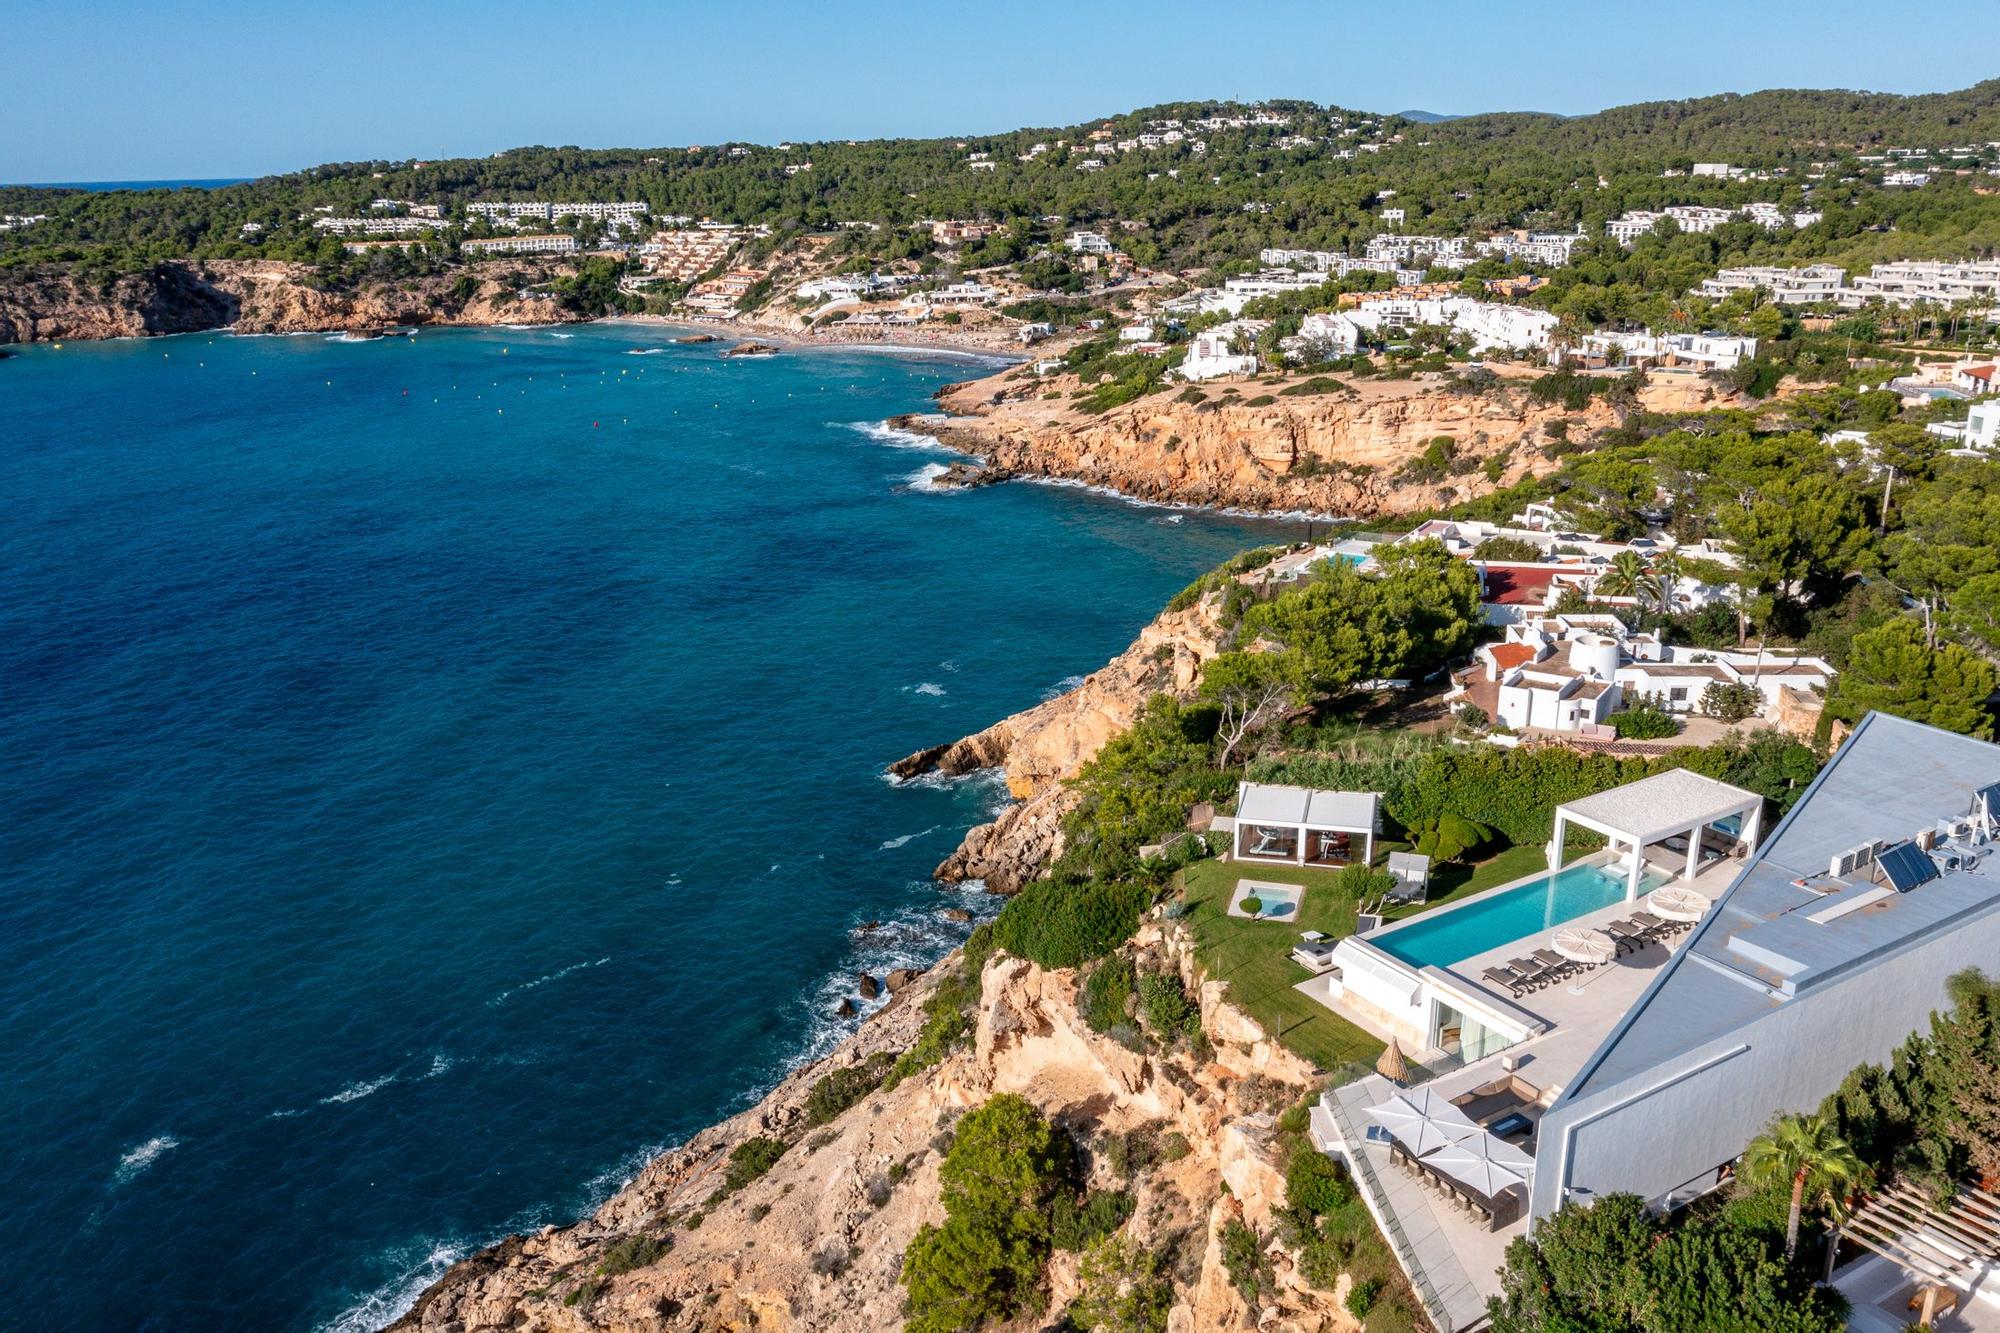 Sale a la venta por 16,5 millones una espectacular villa de Ibiza